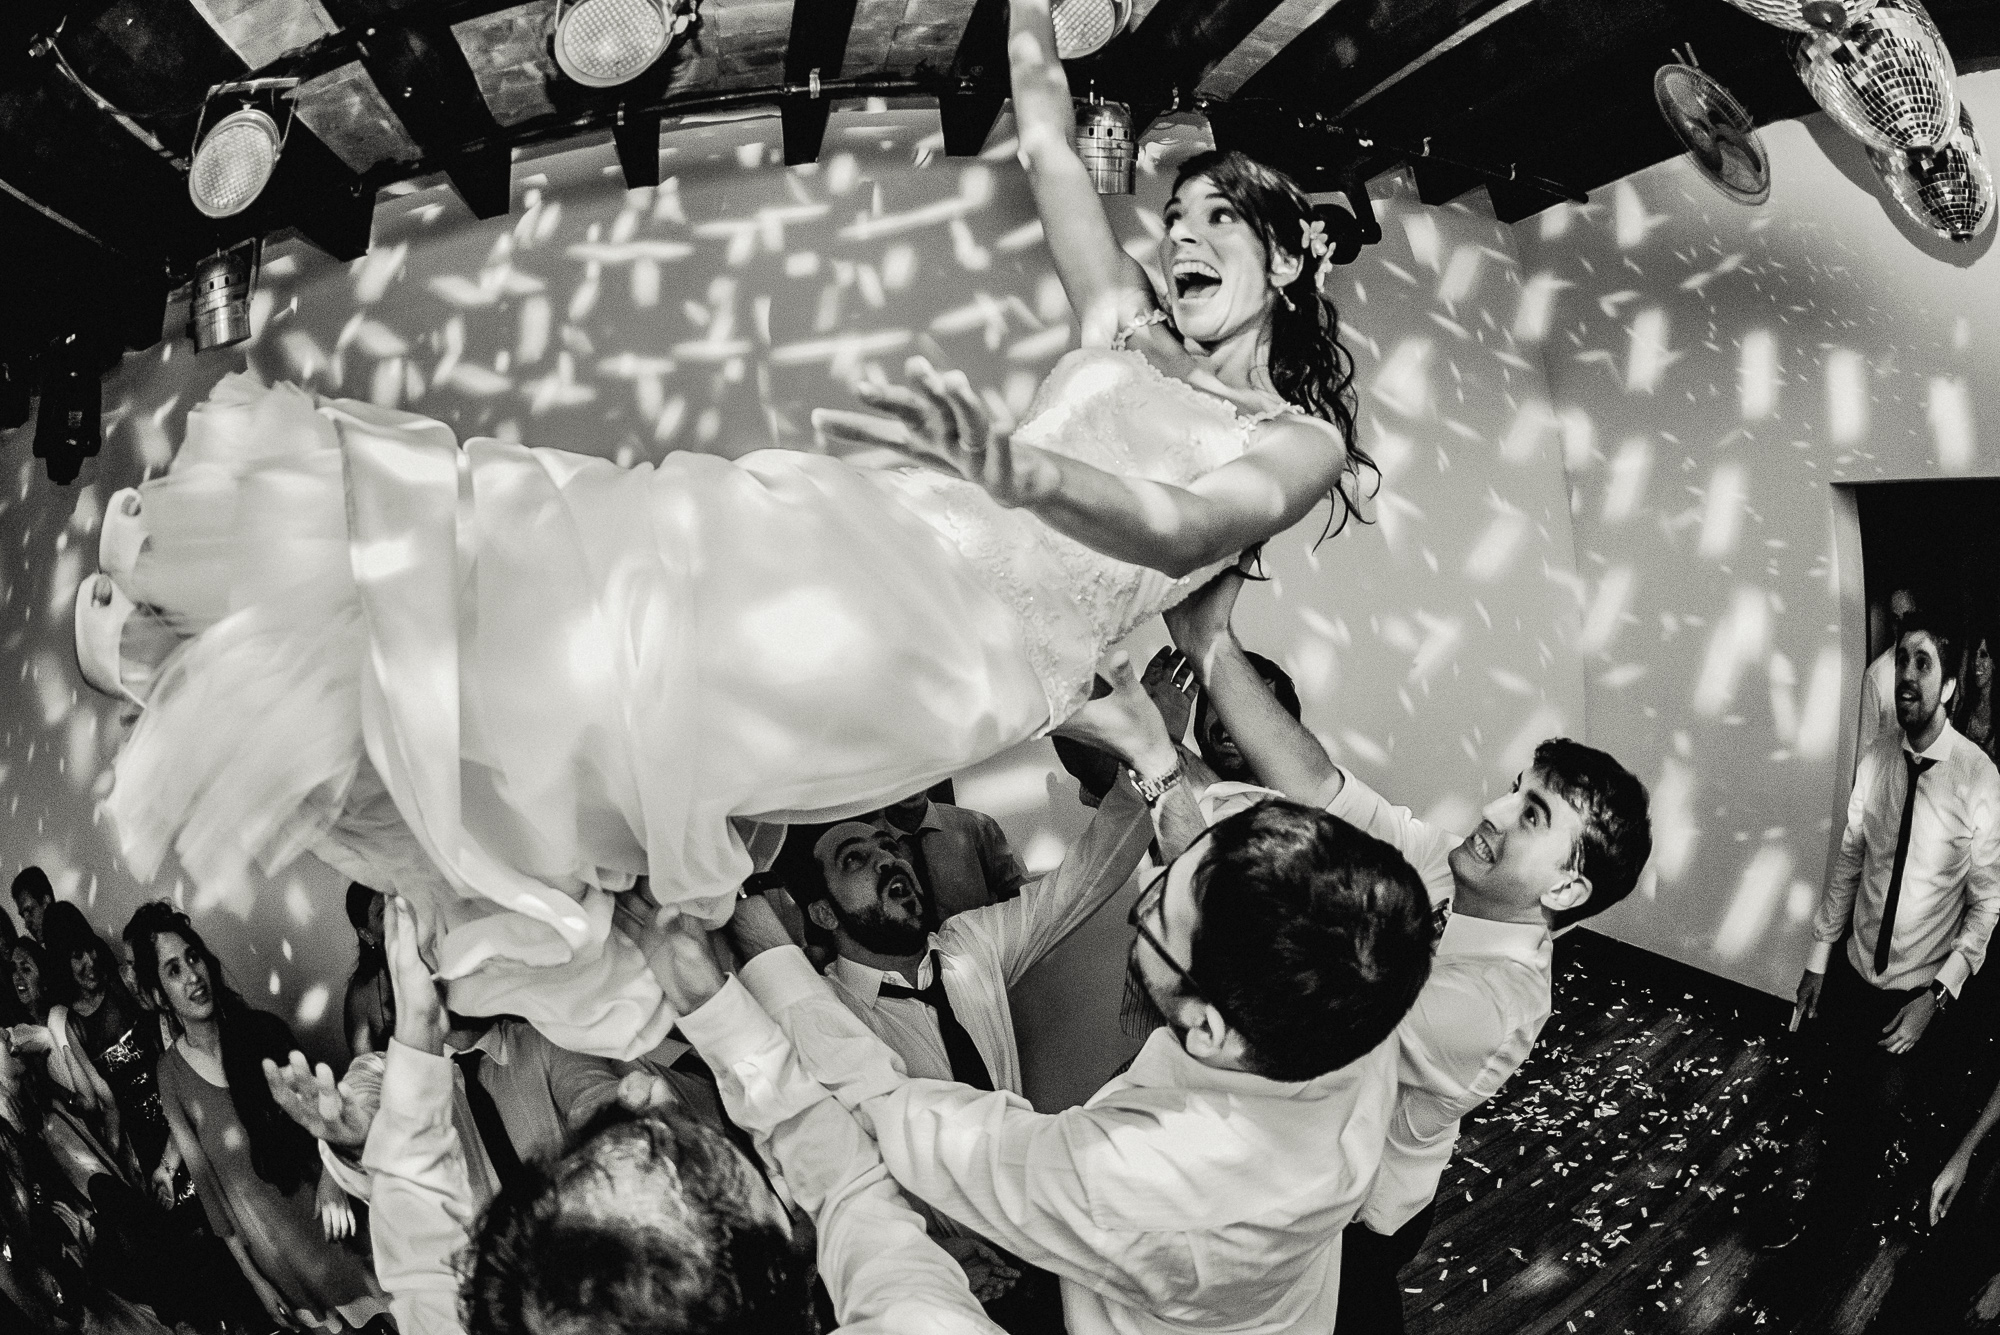 Gustavo Campos, Fotografo de bodas, Estancia La Linda, fotografo casamiento buenos aires, fotoperiodismo de bodas, argentine wedding photography, gustavocampos.net, fotorreportaje de boda